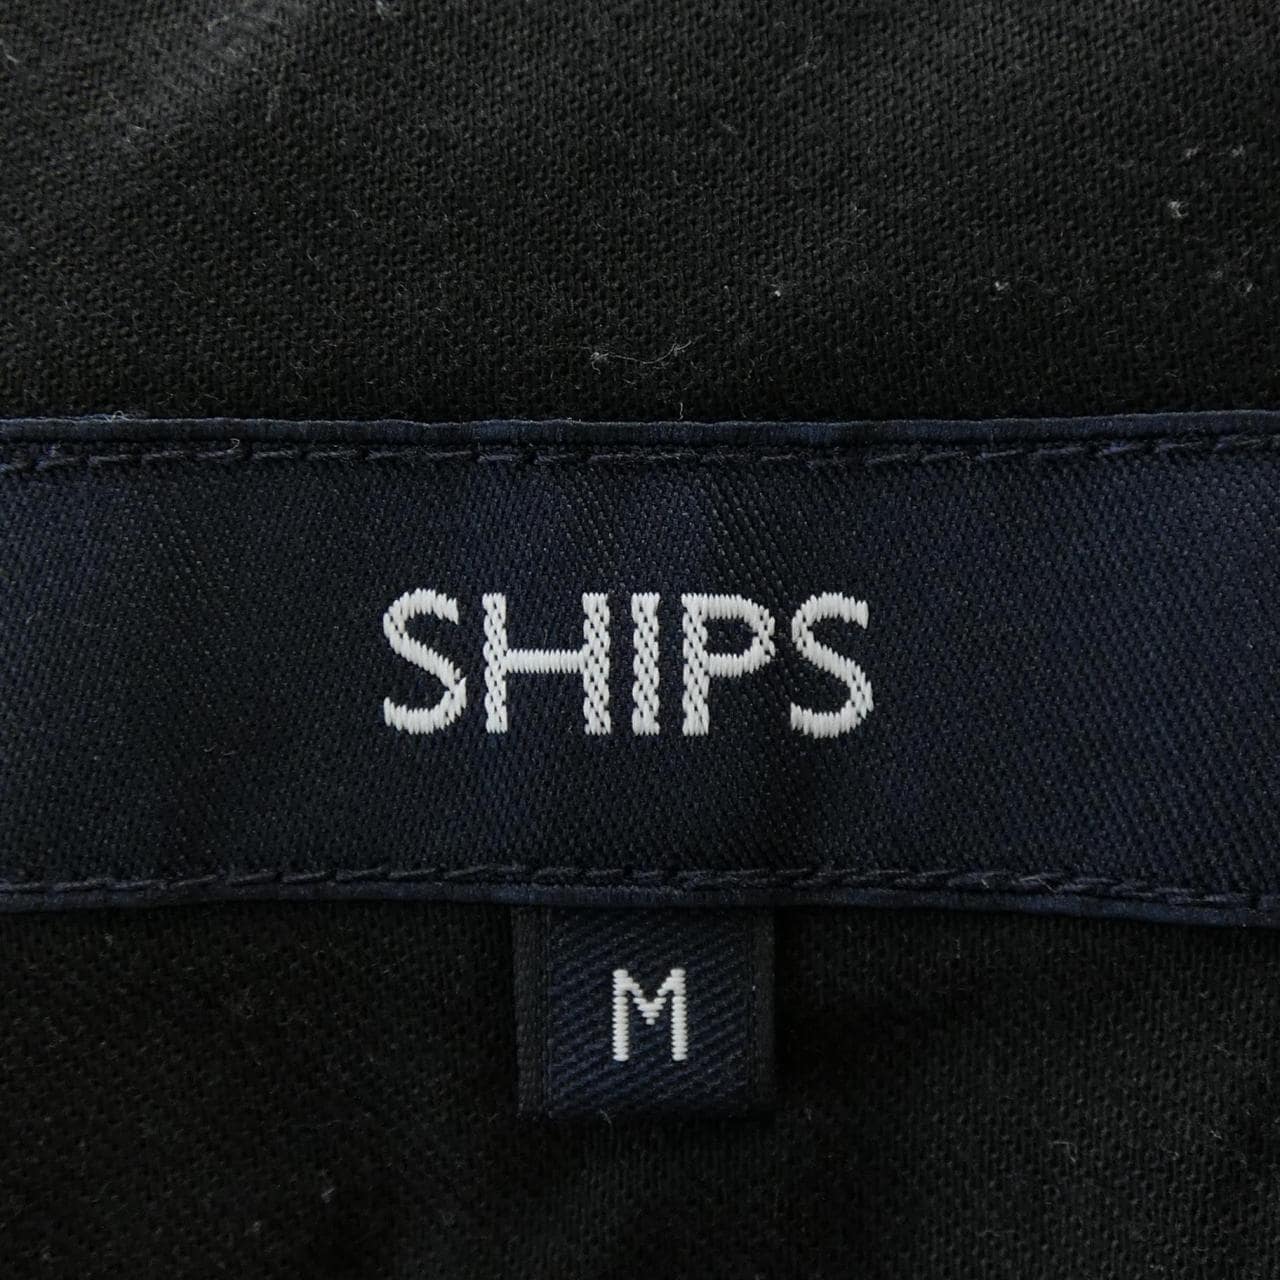 Ships SHIPS pants